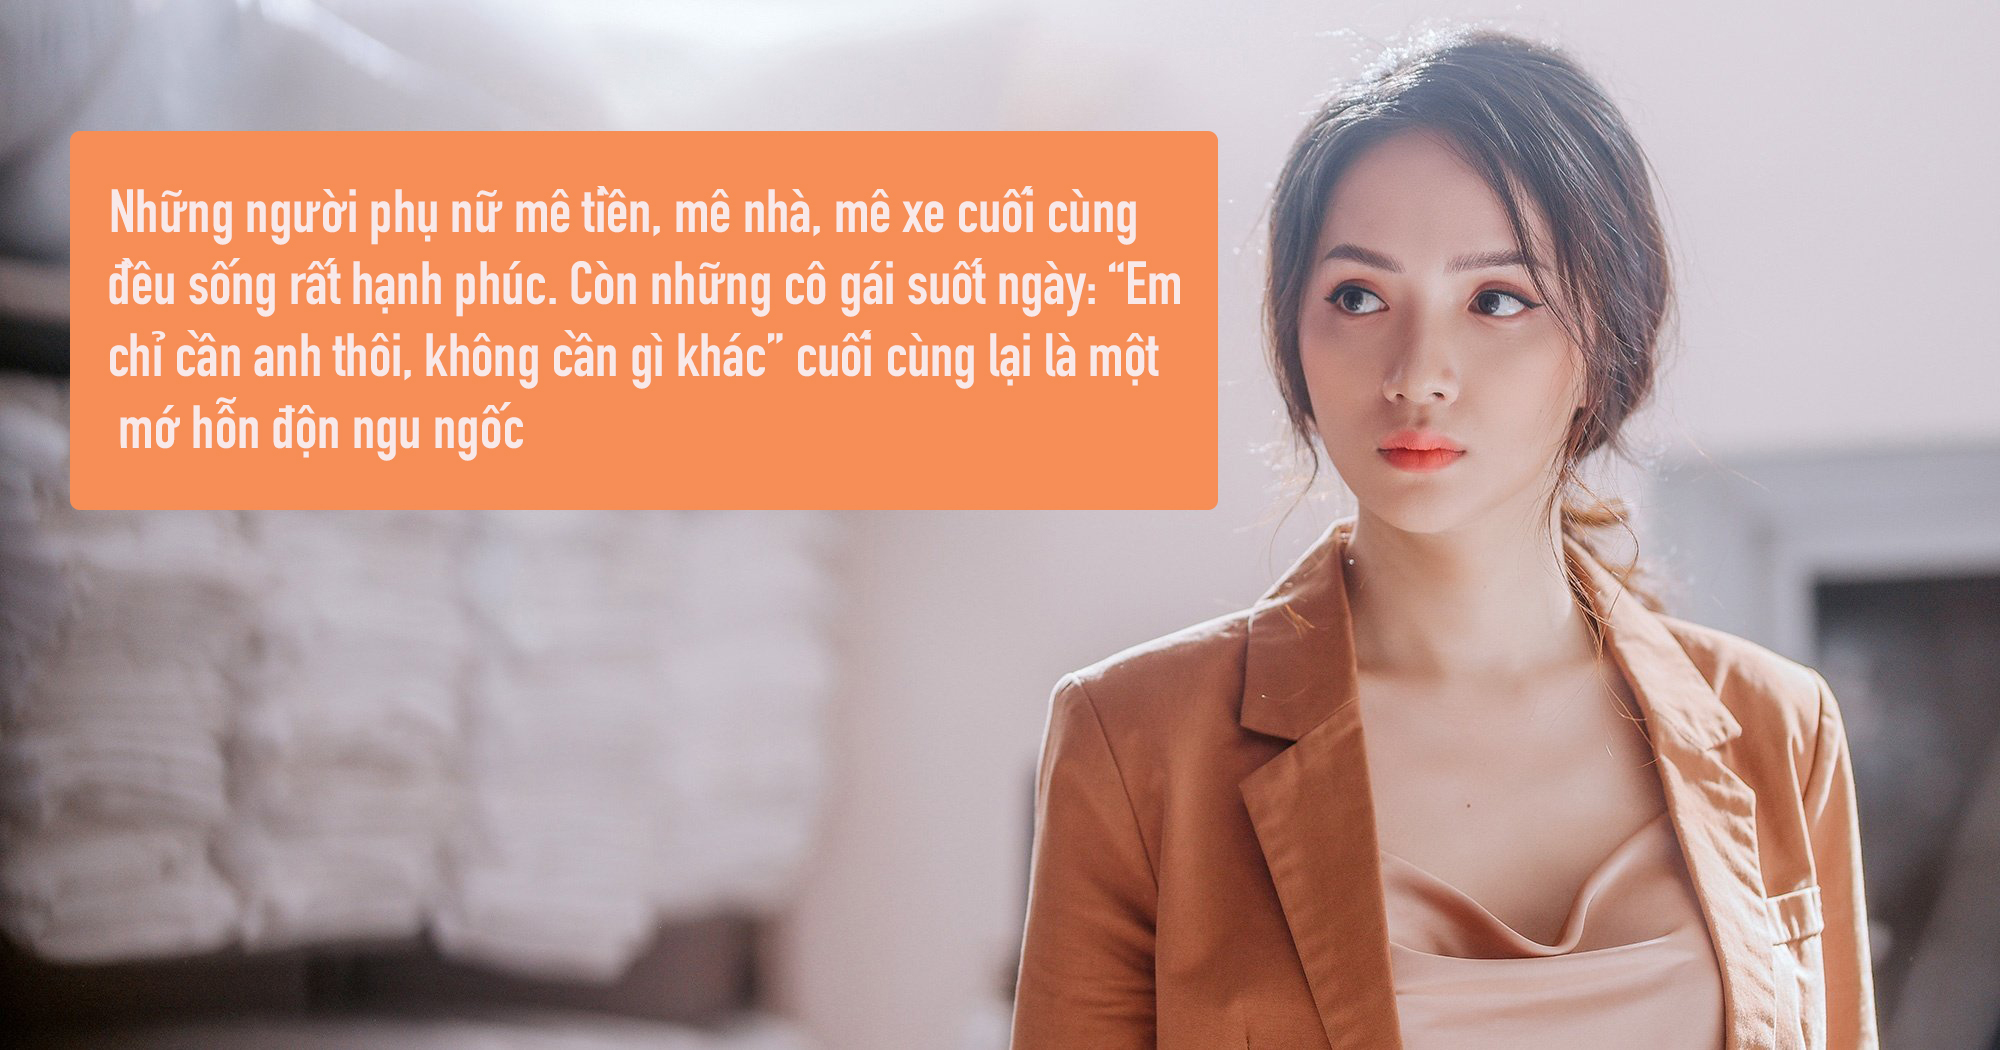 Quan điểm của hoa hậu Hương Giang đang nhận nhiều phản hồi trái chiều